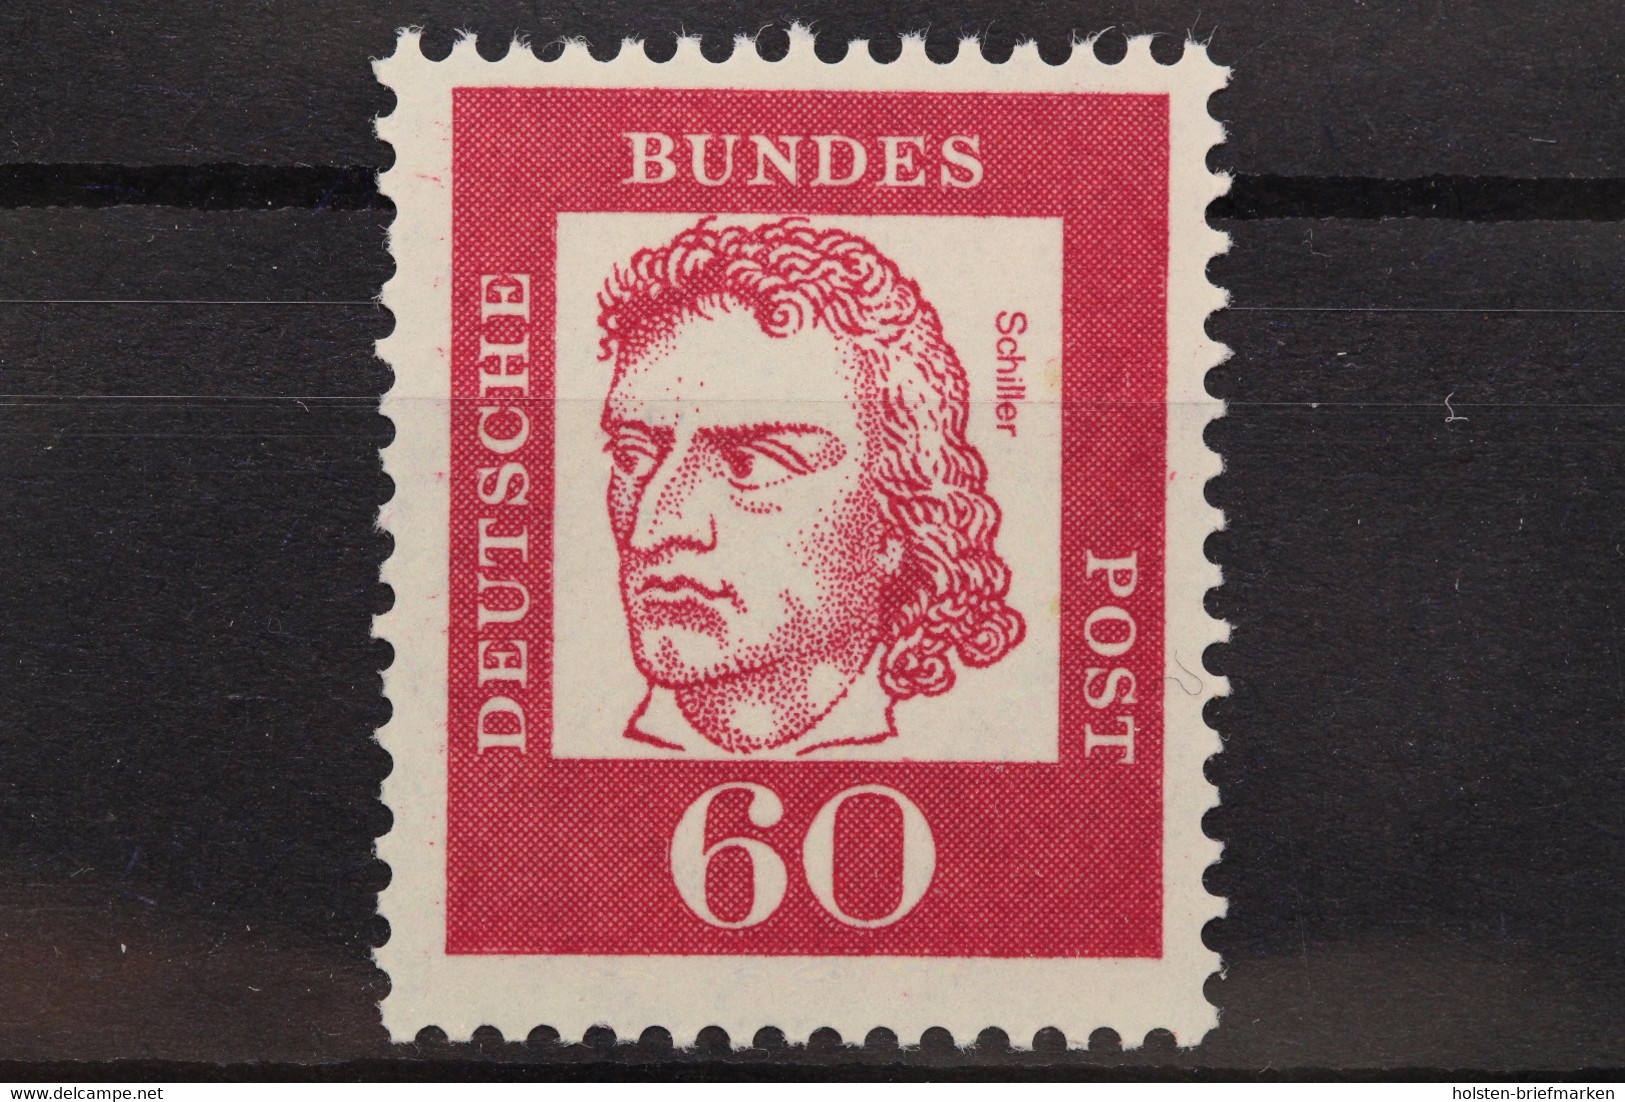 Deutschland (BRD), MiNr. 357 Y R, ZN 0960, Postfrisch / MNH - Rolstempels